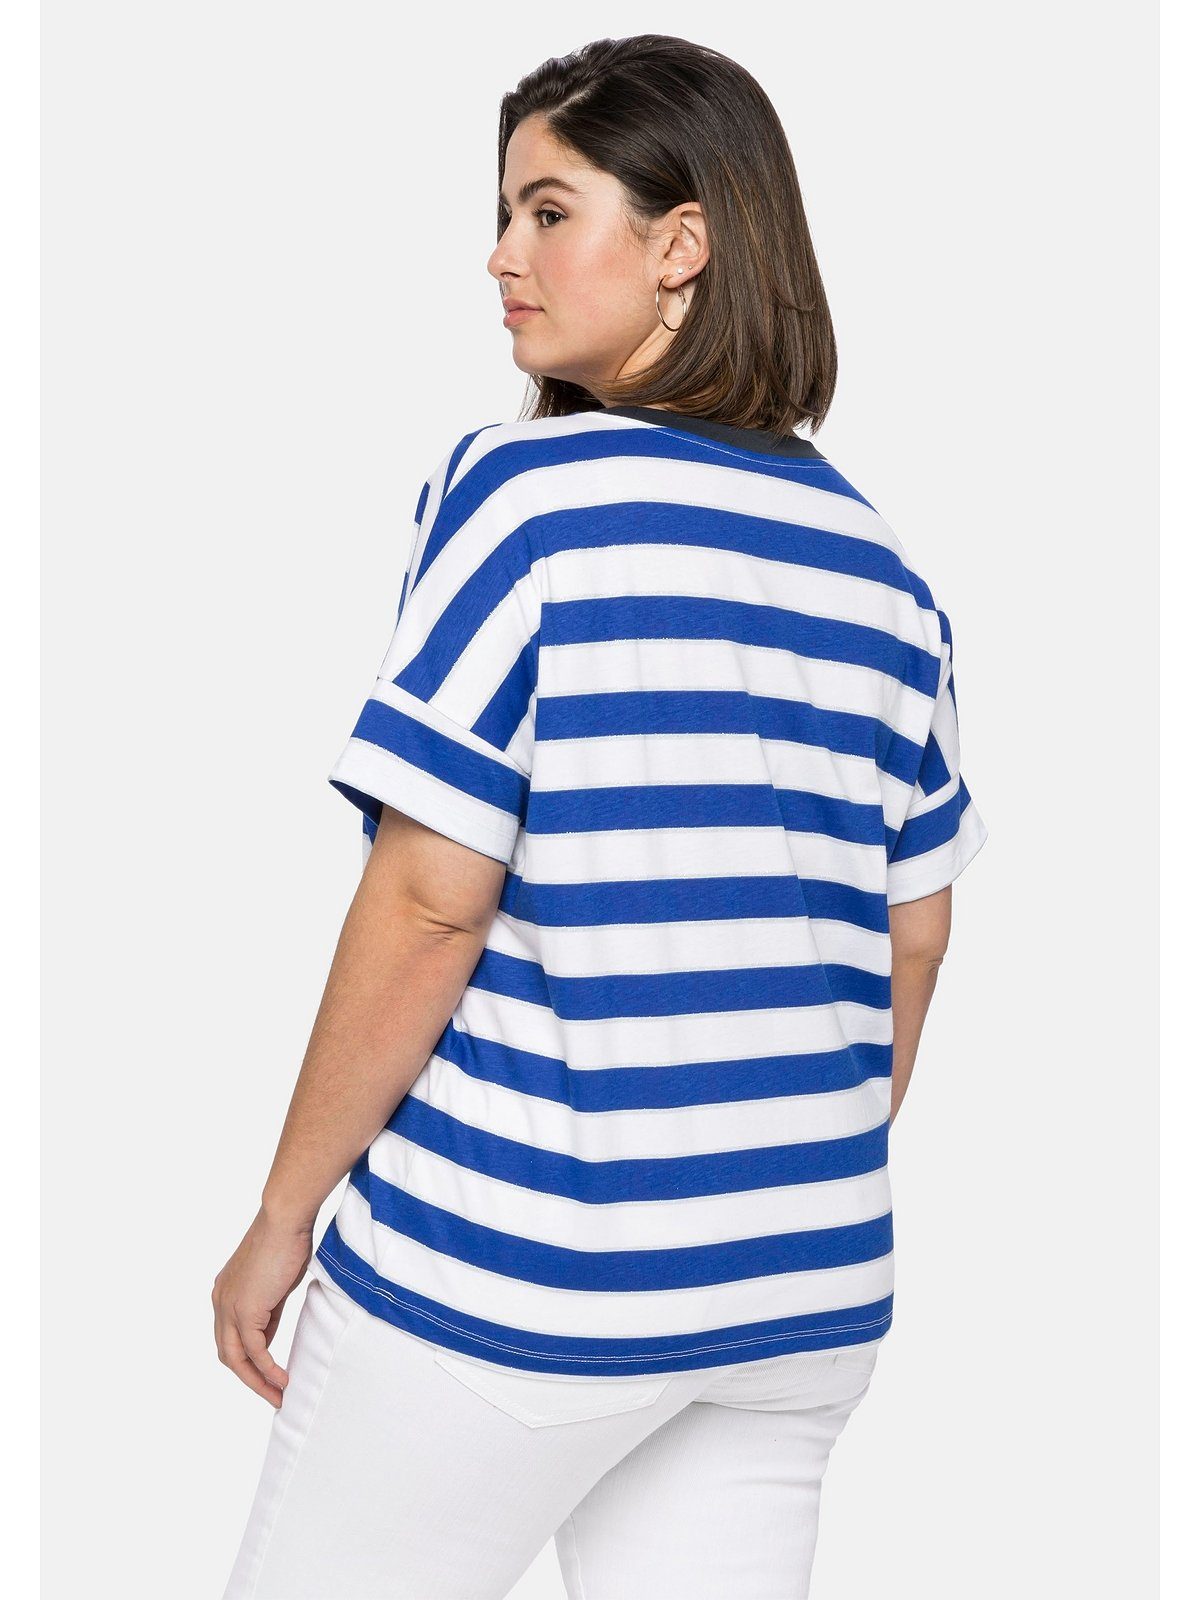 Sheego T-Shirt in Größen Oversize-Form royalblau-weiß mit Große Glitzergarn